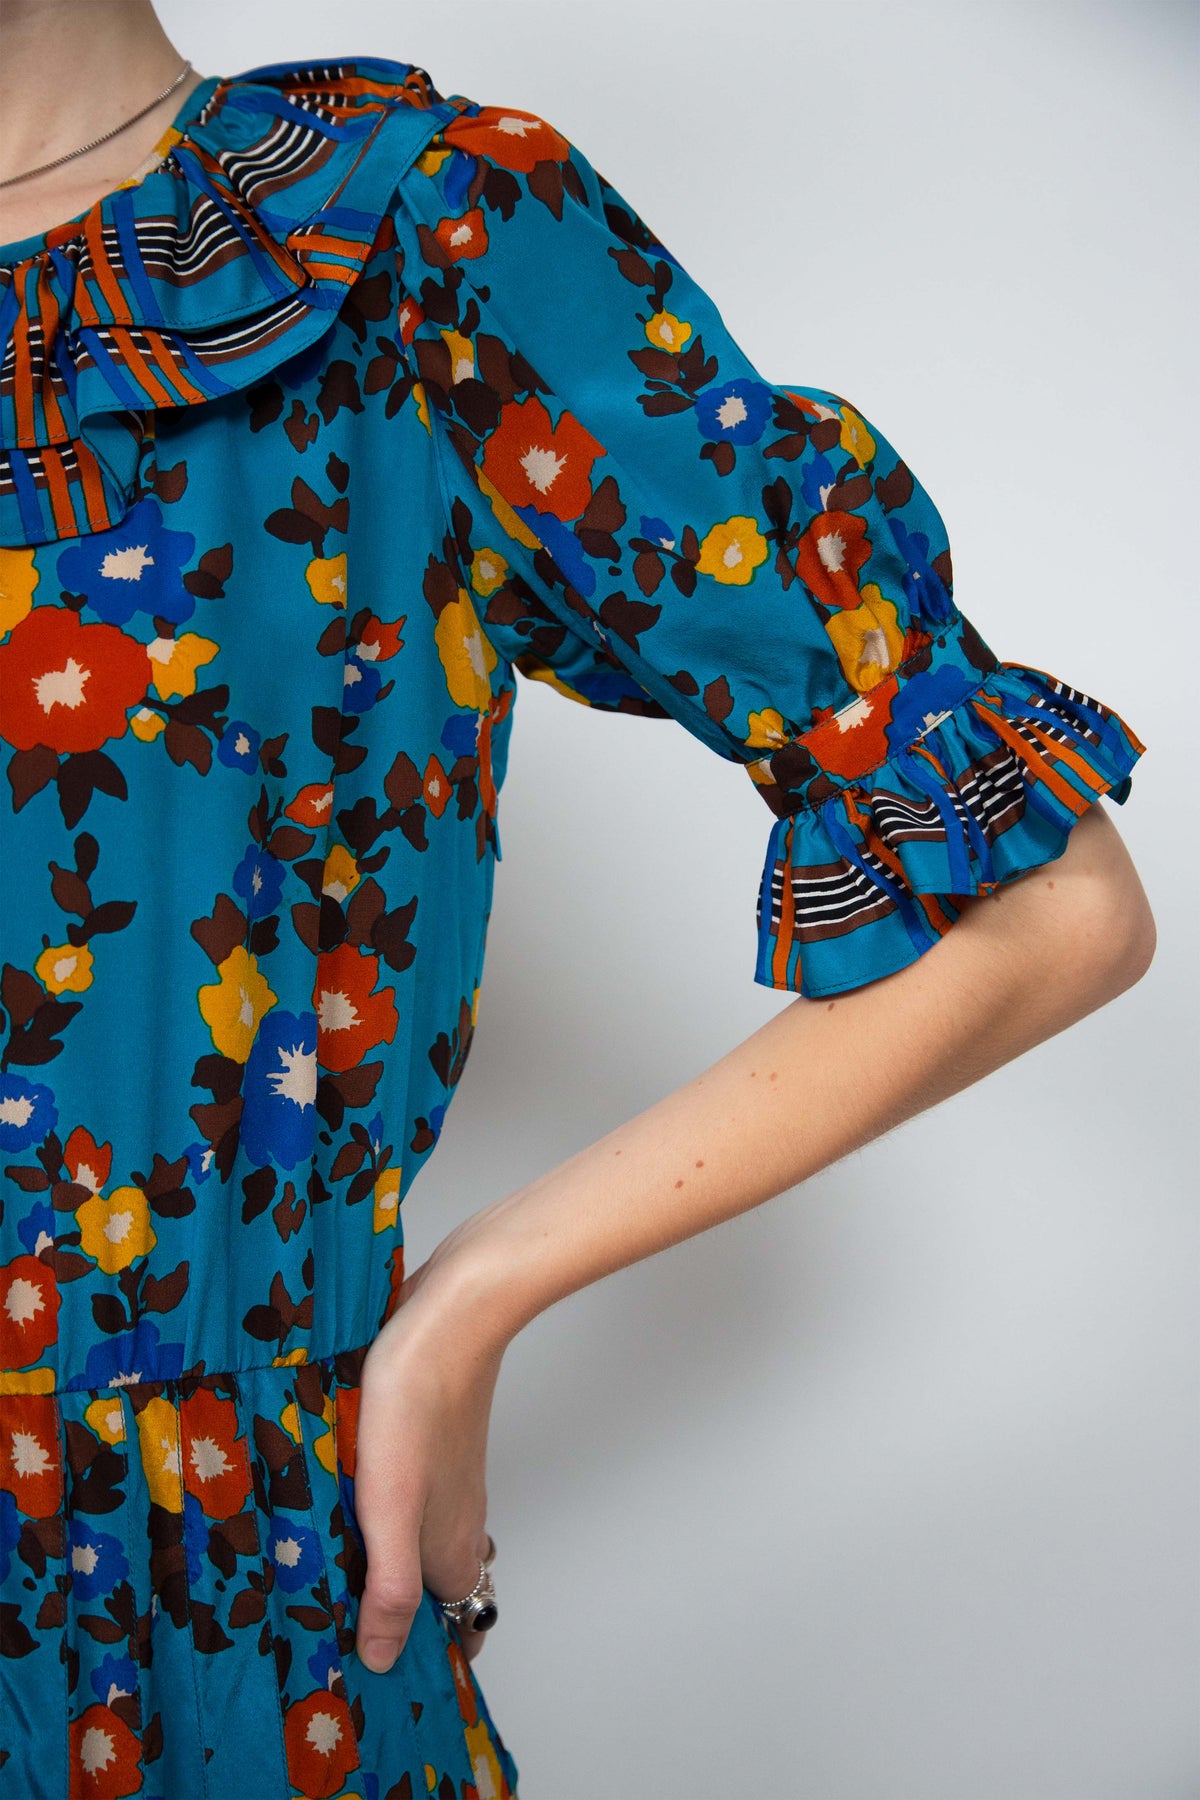 Yves Saint Laurent floral dress